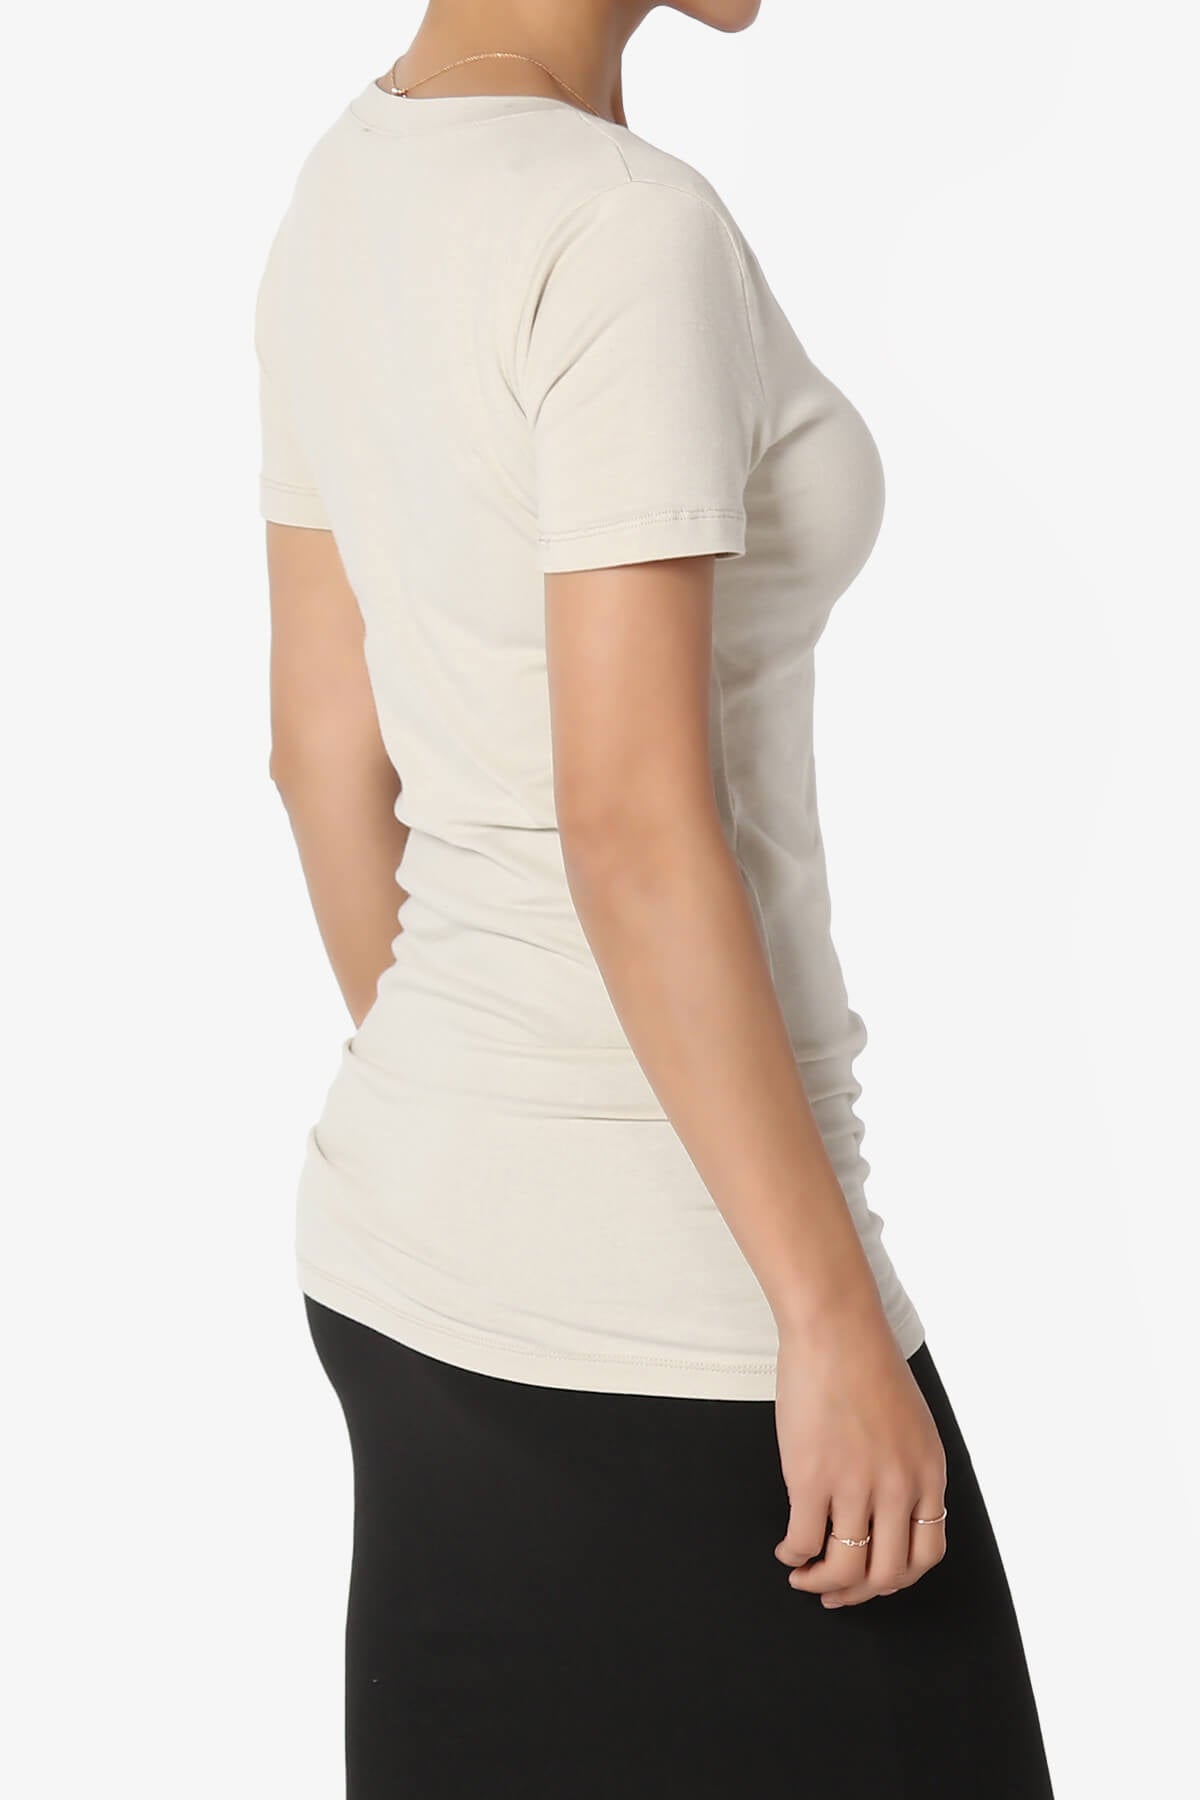 Candela V-Neck Short Sleeve T-Shirts SAND BEIGE_4